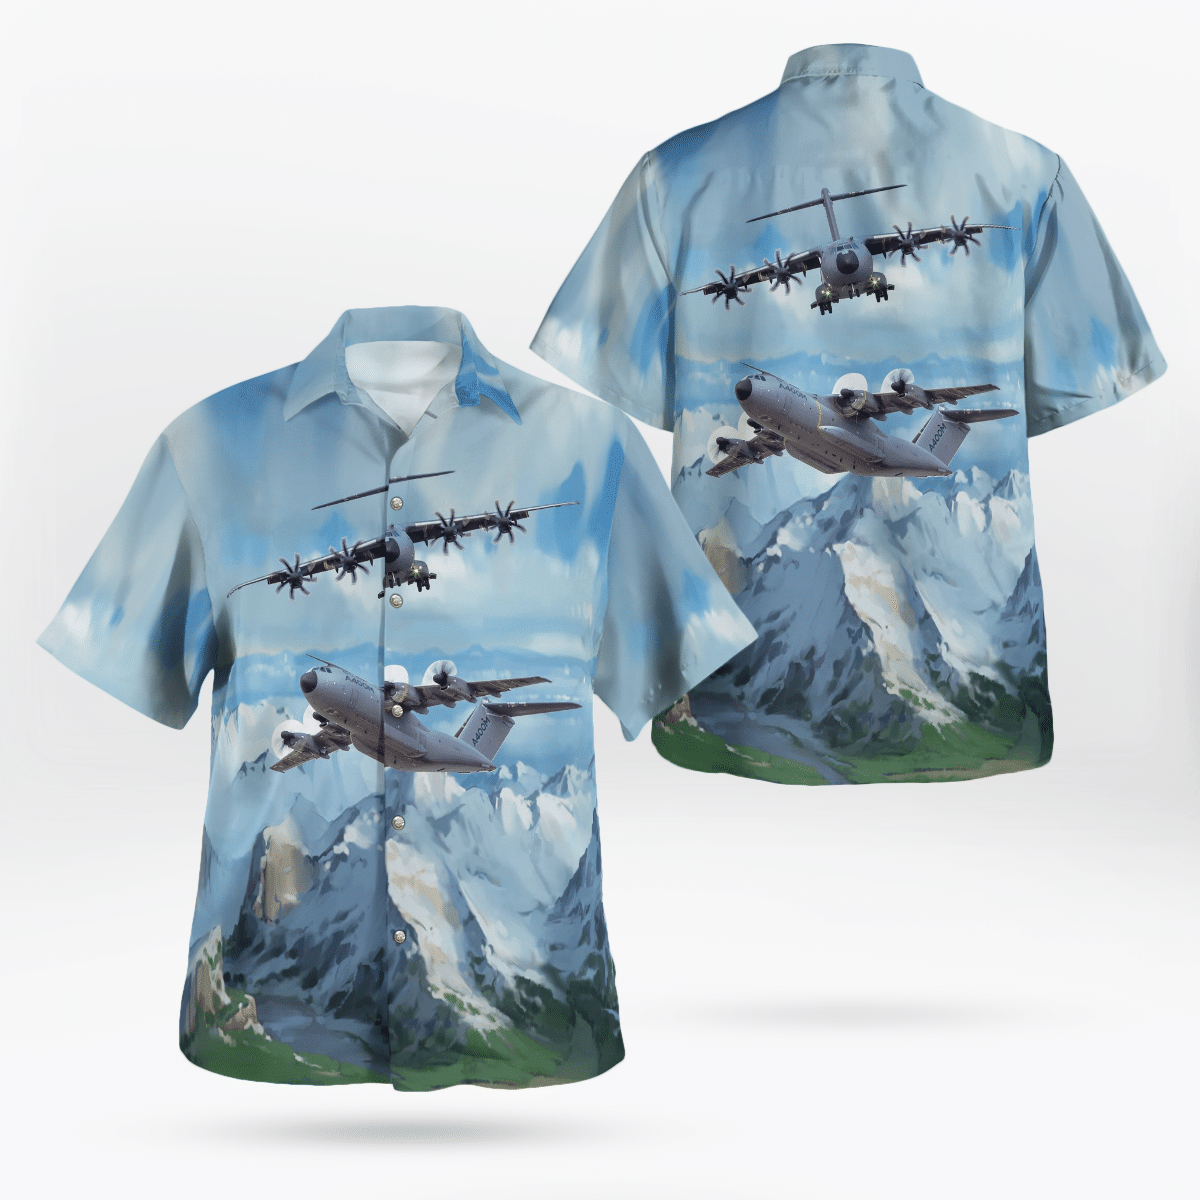 Best Hawaiian shirts 2022 238